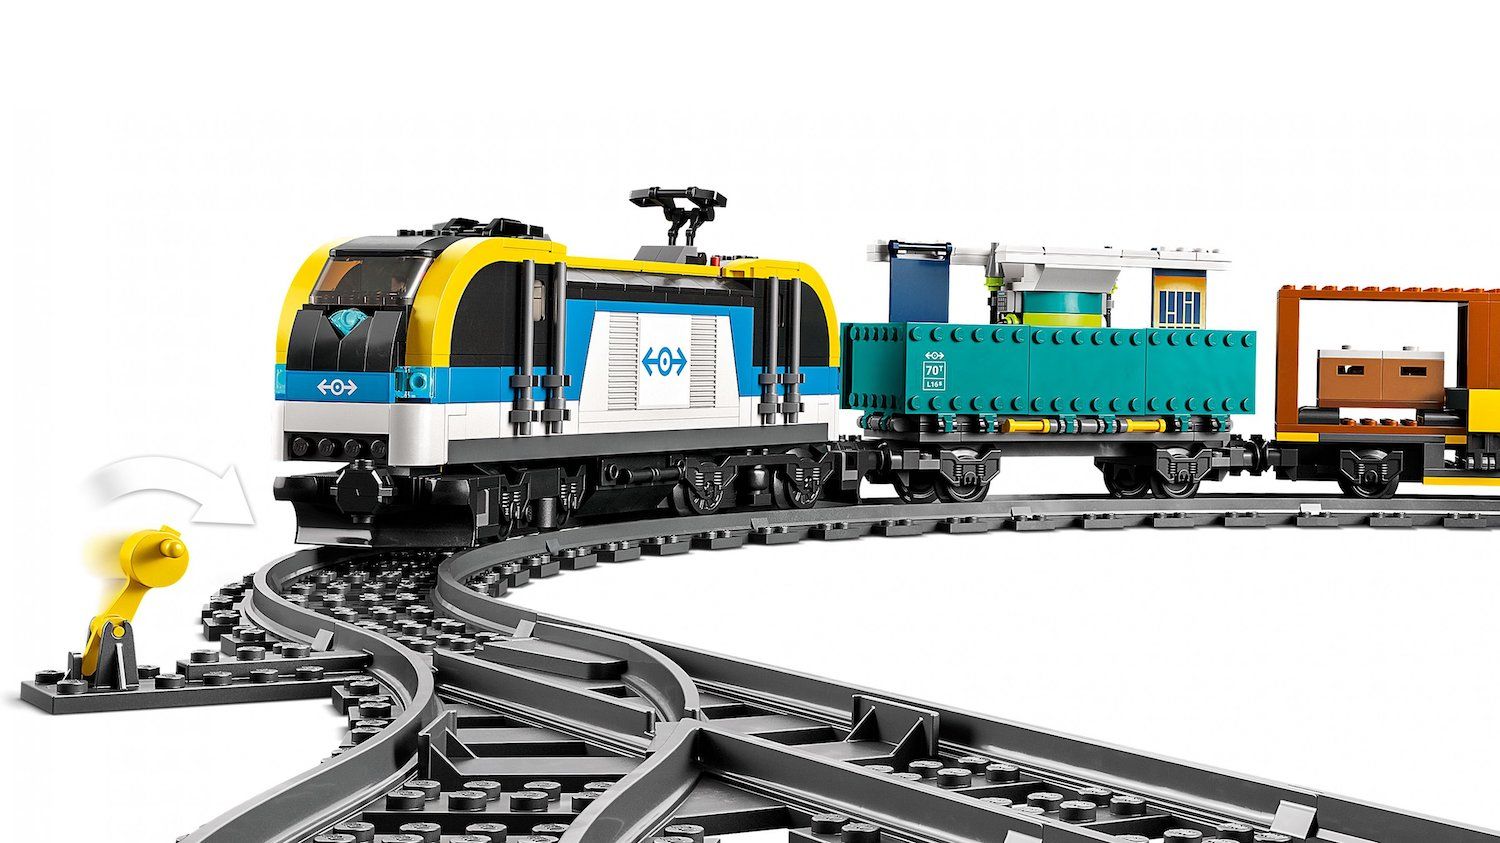 Le Prime Immagini del set LEGO City Freight Train (60336) - Mattonito